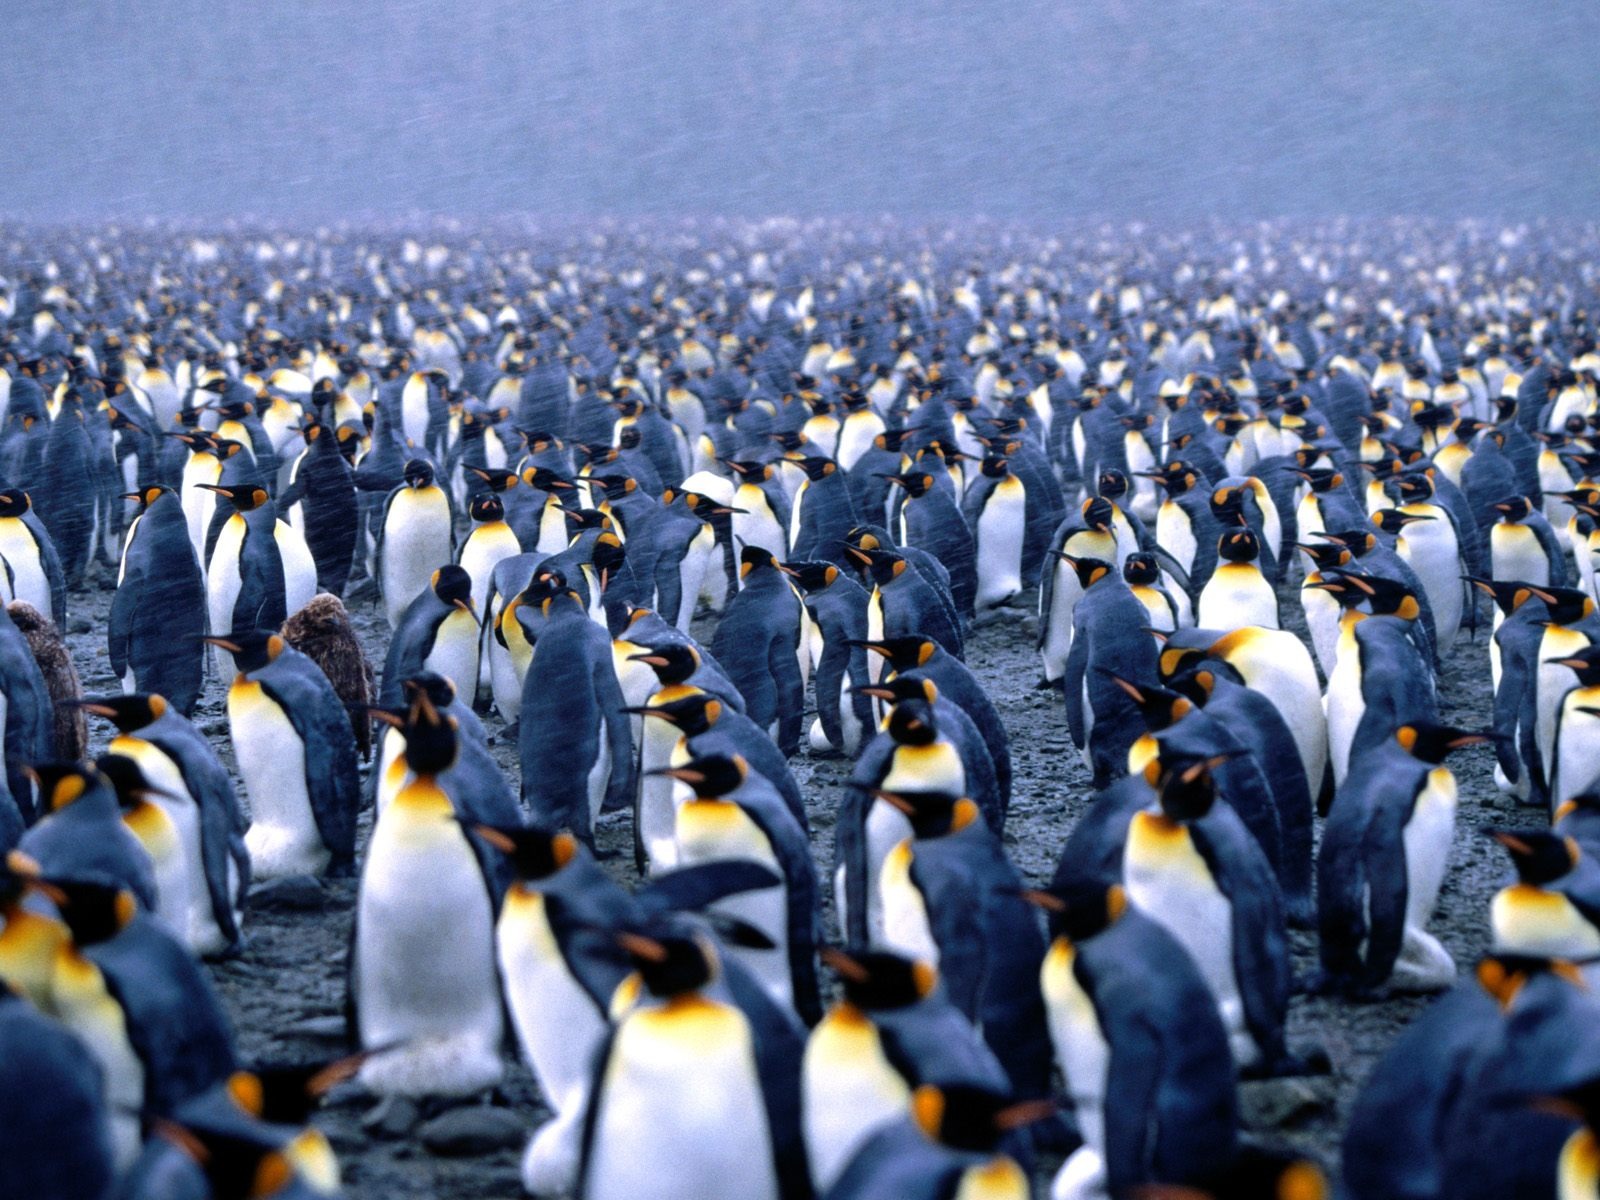 ペンギン写真の壁紙 #4 - 1600x1200